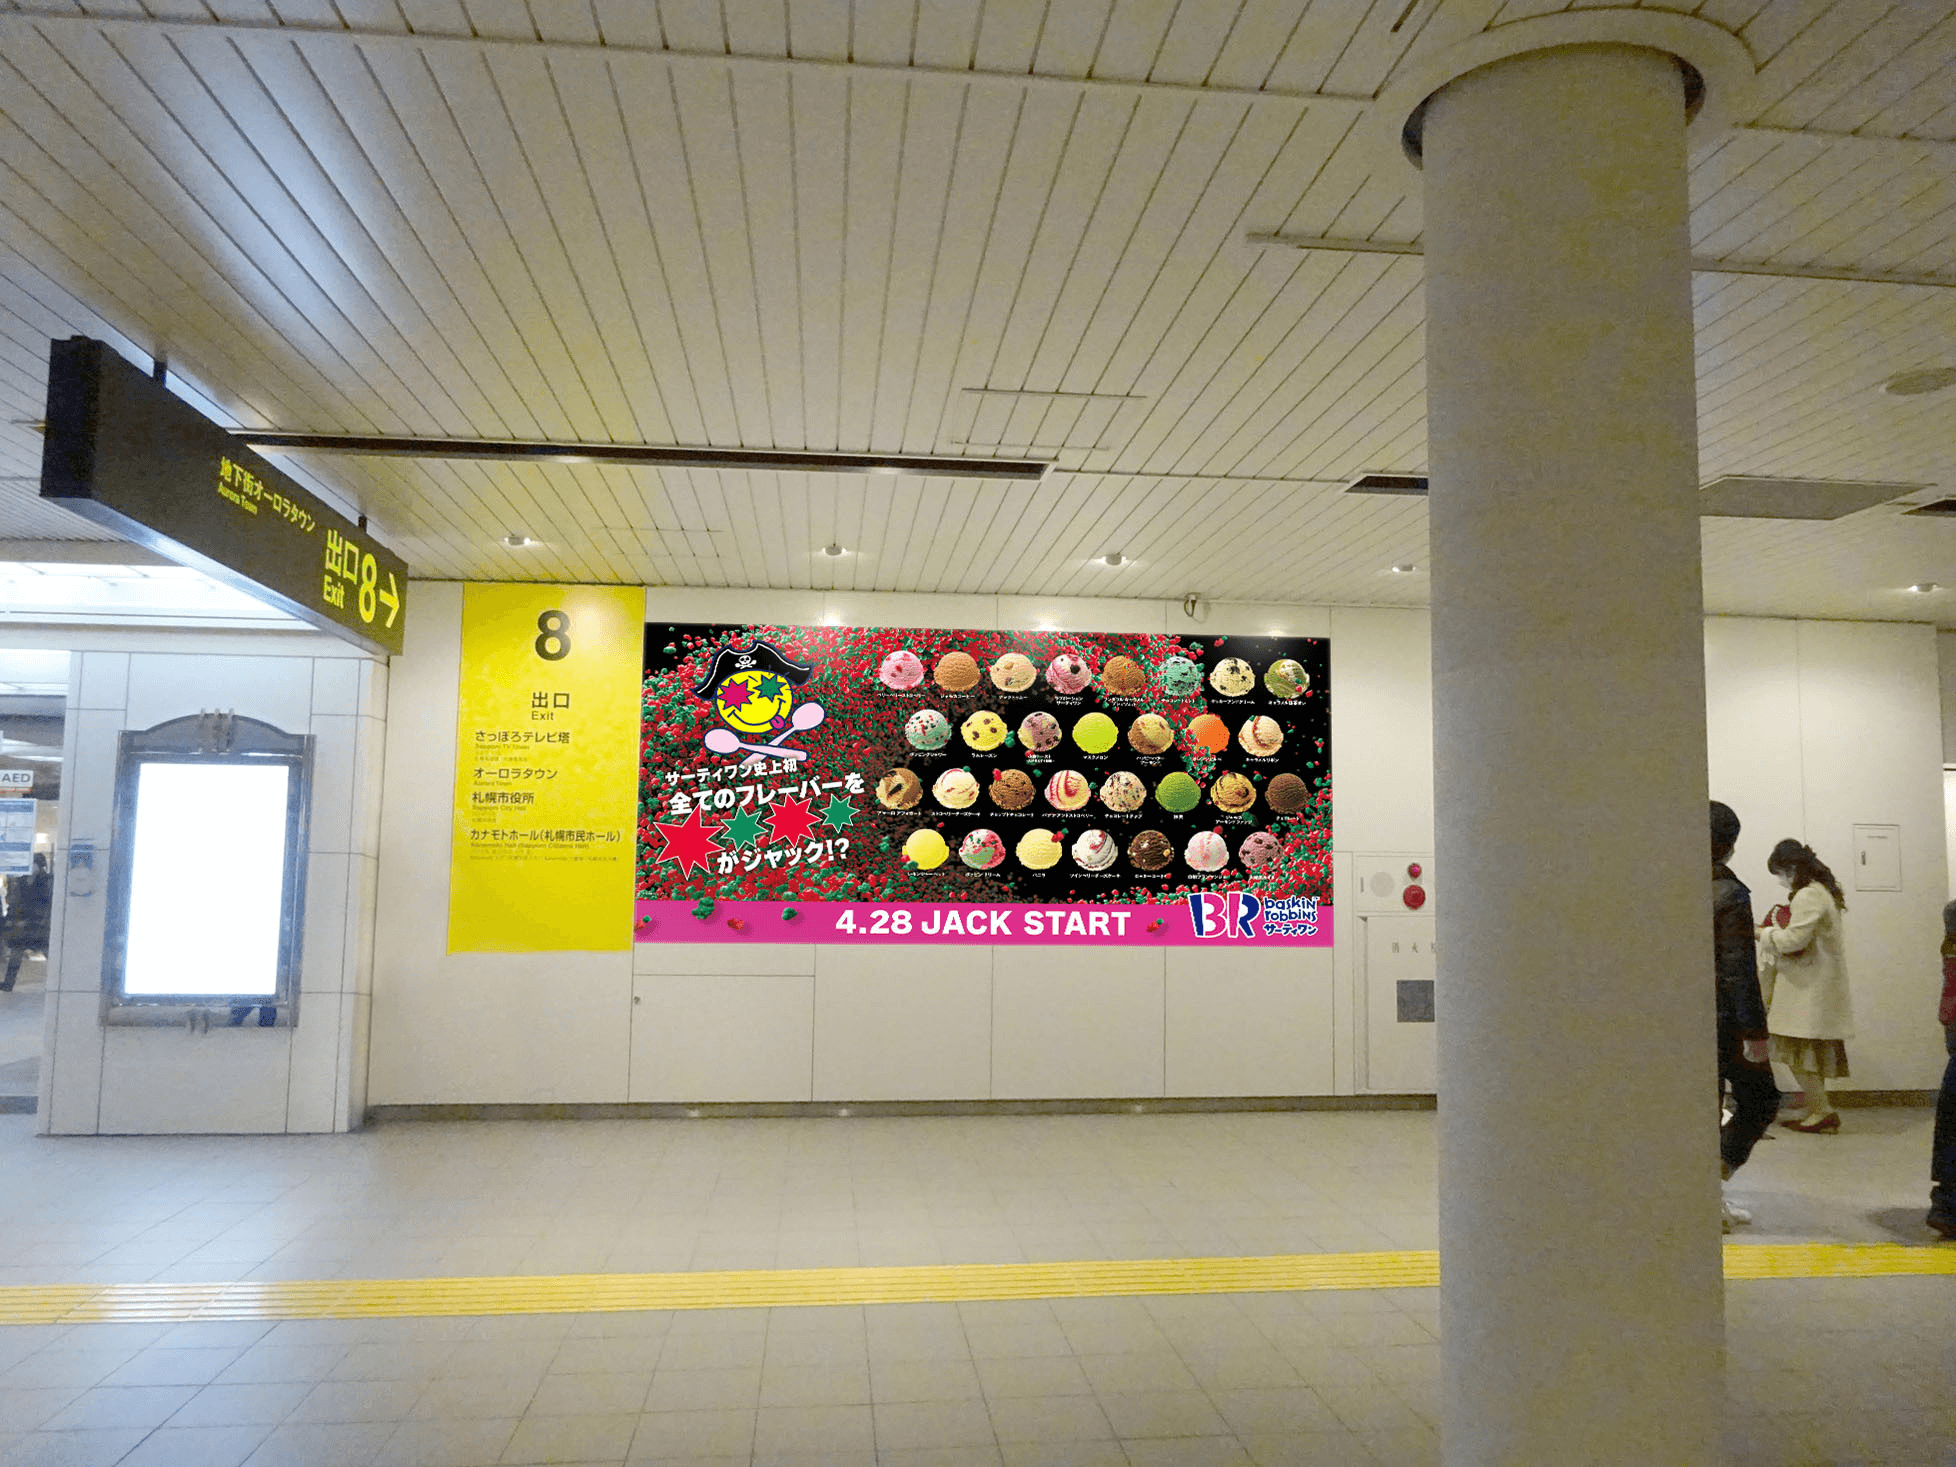 サーティワンの『パチキャンジャック』キャンペーン-巨大広告(札幌)